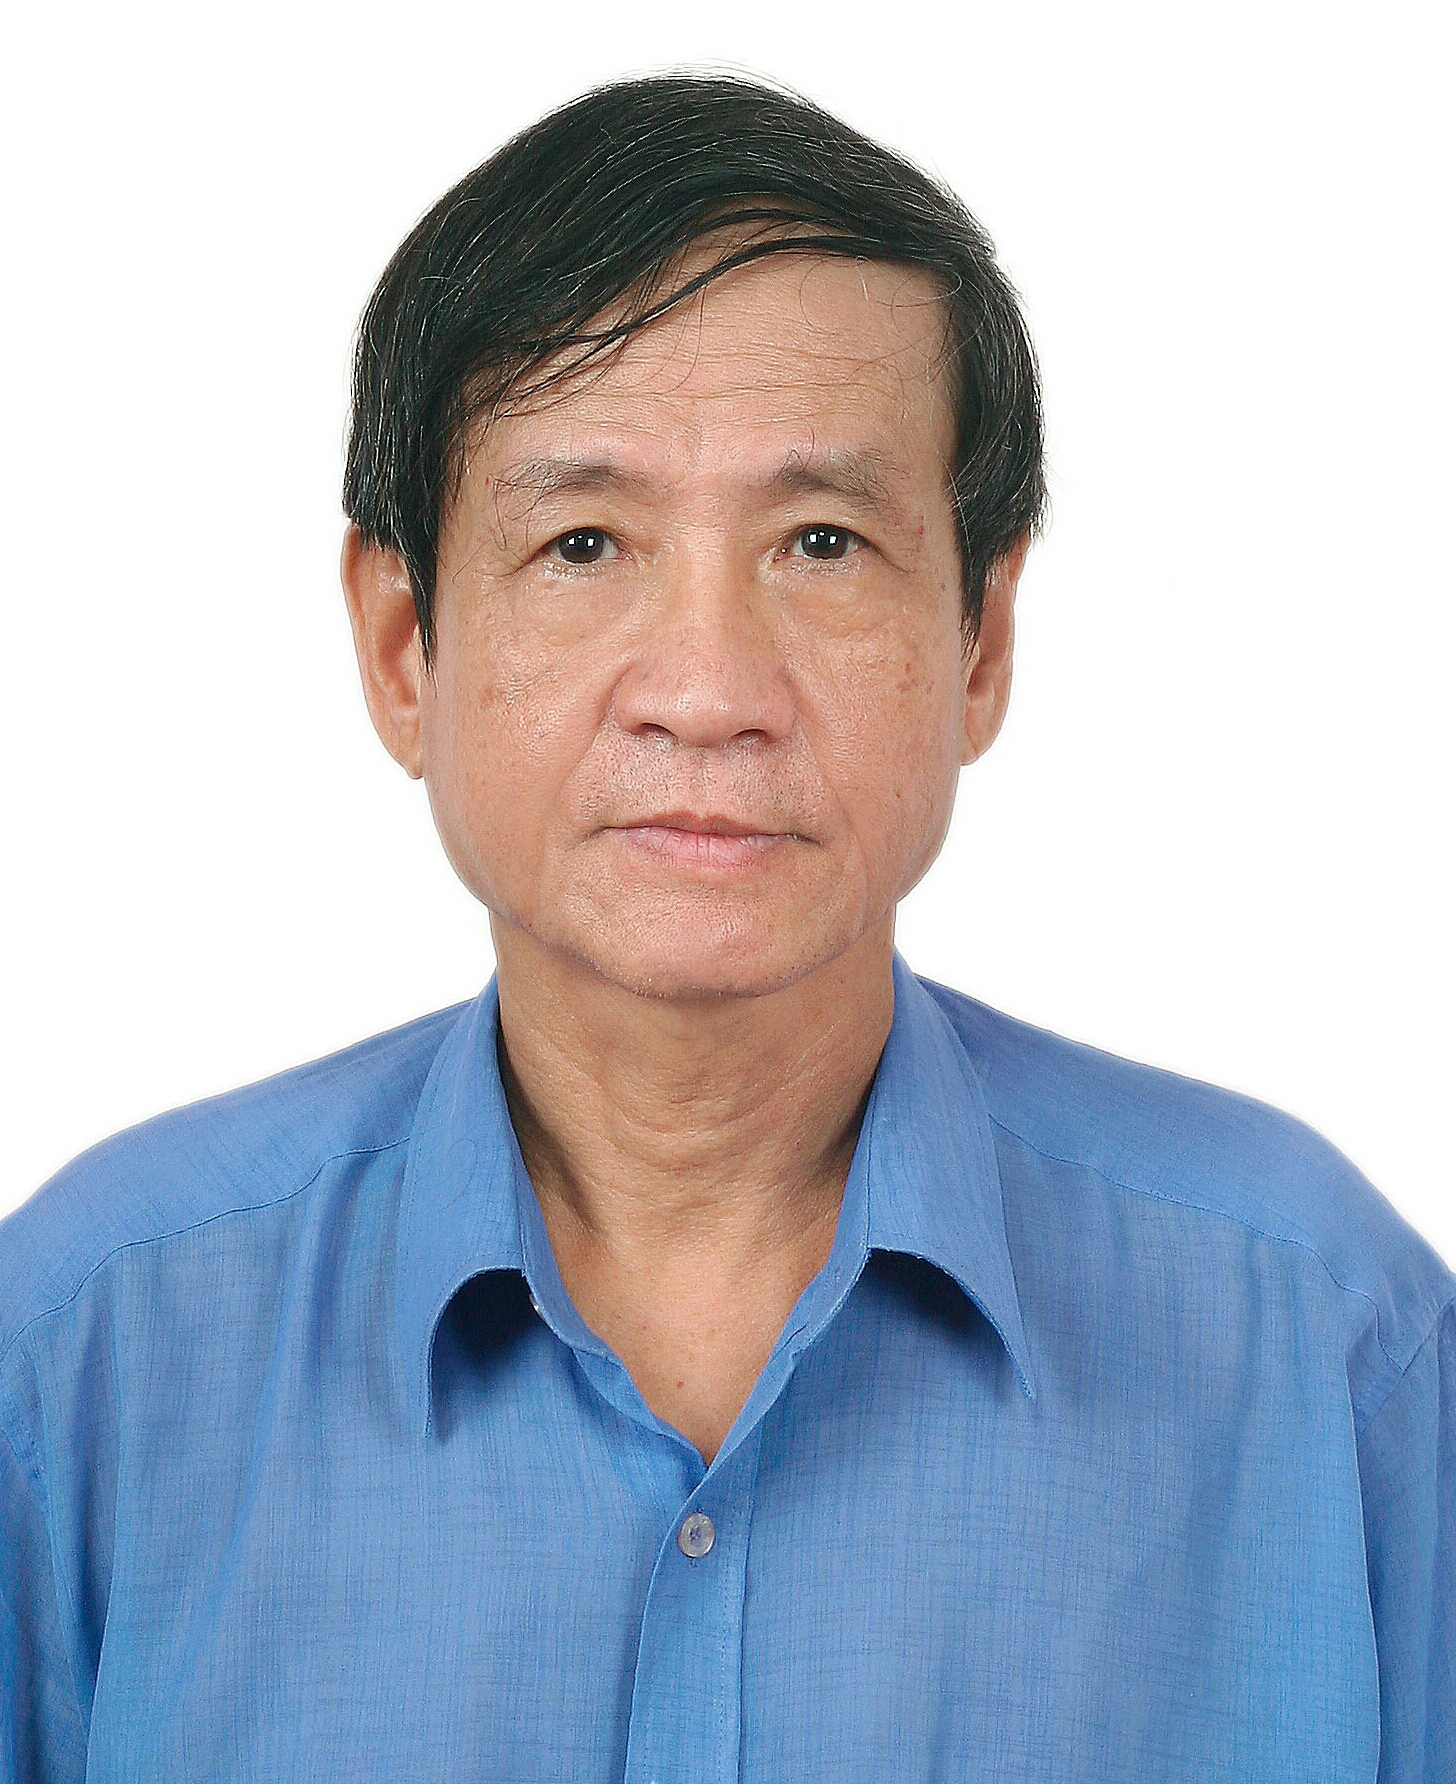 Giới thiệu về luật gia – Nhà báo Nguyễn Chấn